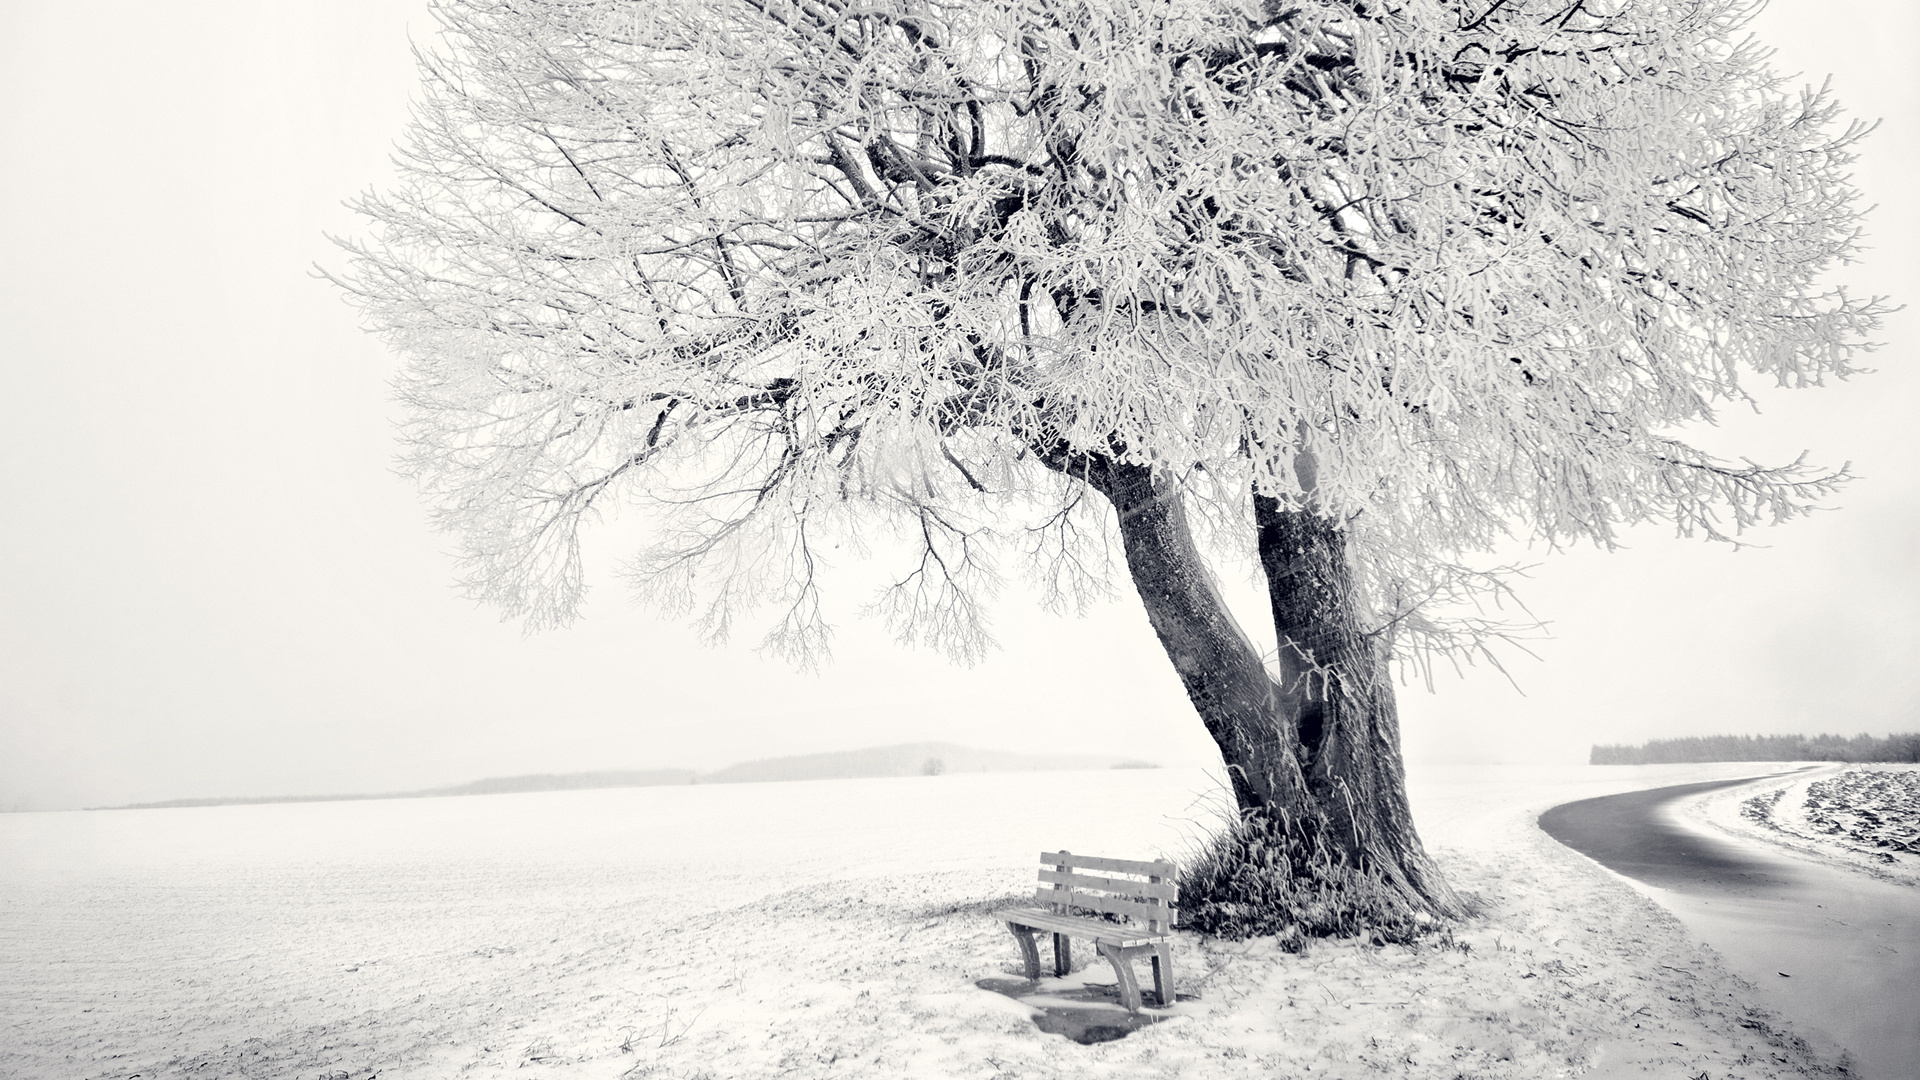 Скачать картинку Зима, Фотографии в телефон бесплатно.